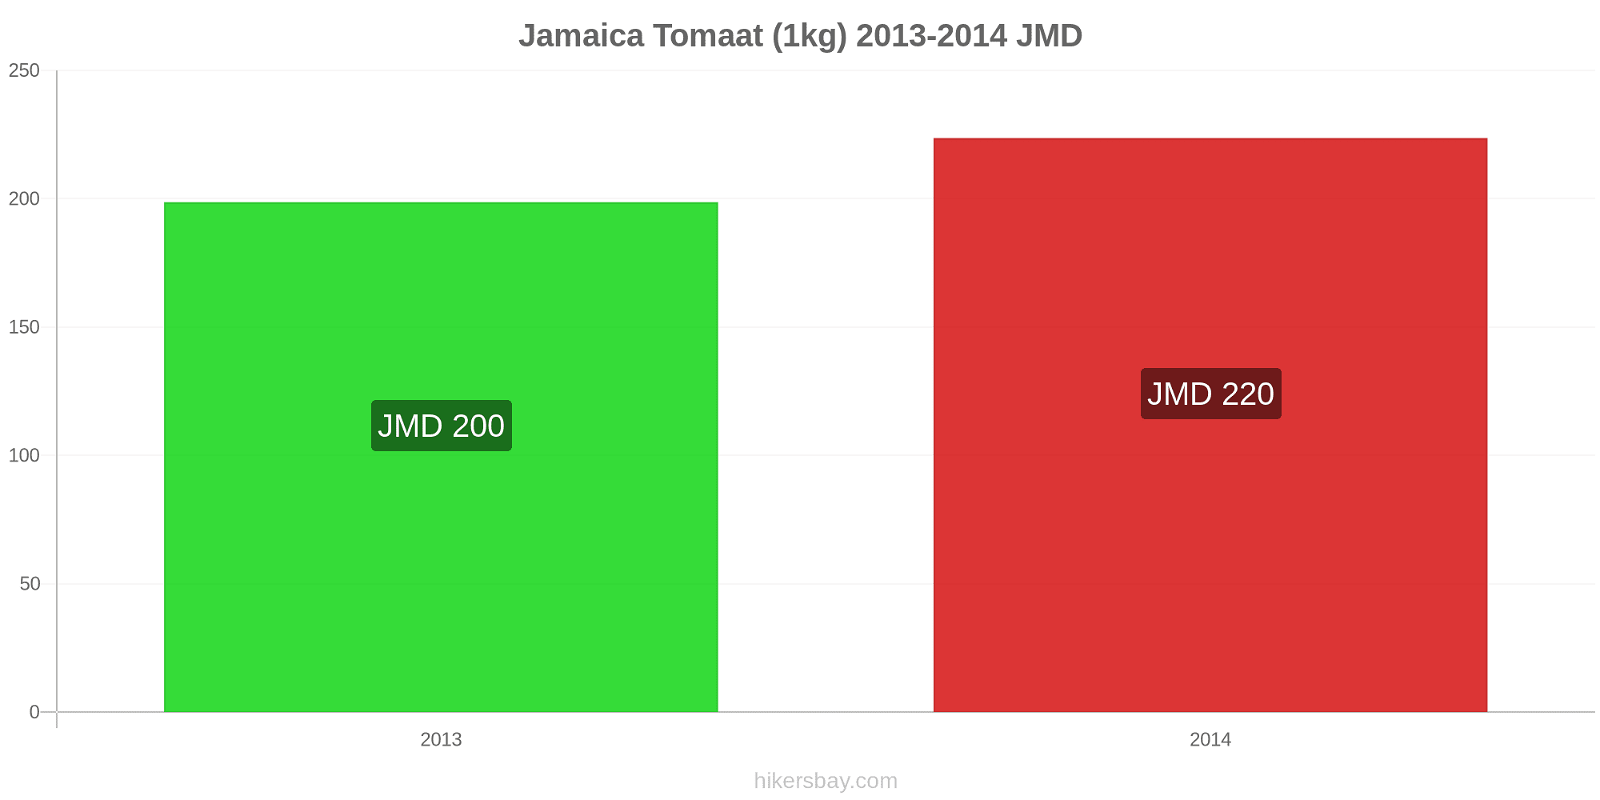 Jamaica prijswijzigingen Tomaat (1kg) hikersbay.com